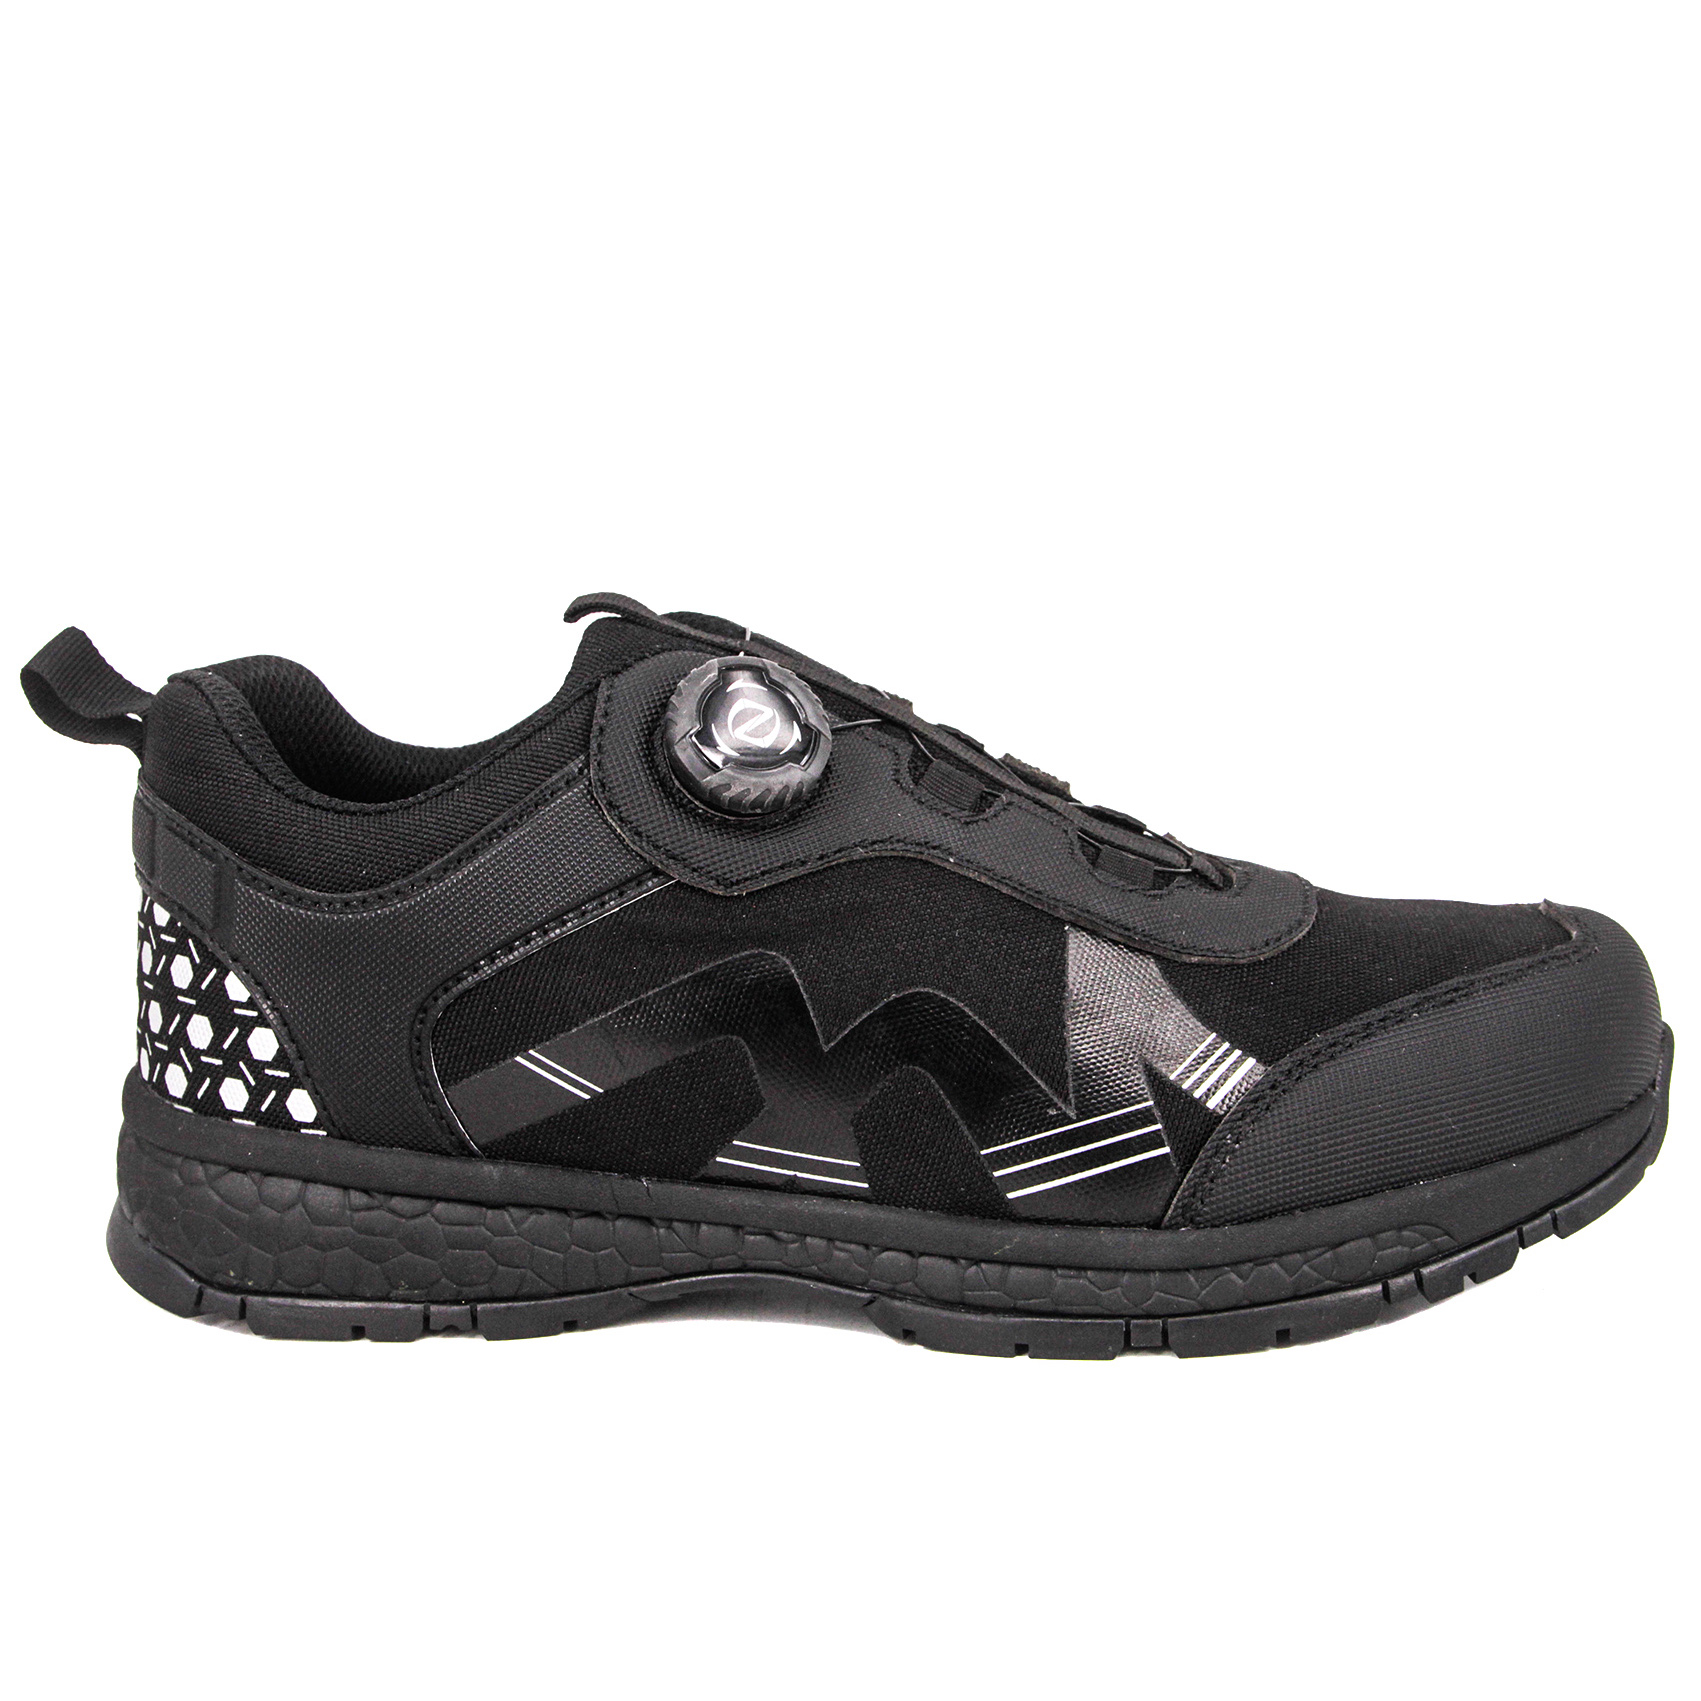 MILFORCE Өндөр чанартай хямд Цэргийн хамгаалалтын гутлын армийн гутал